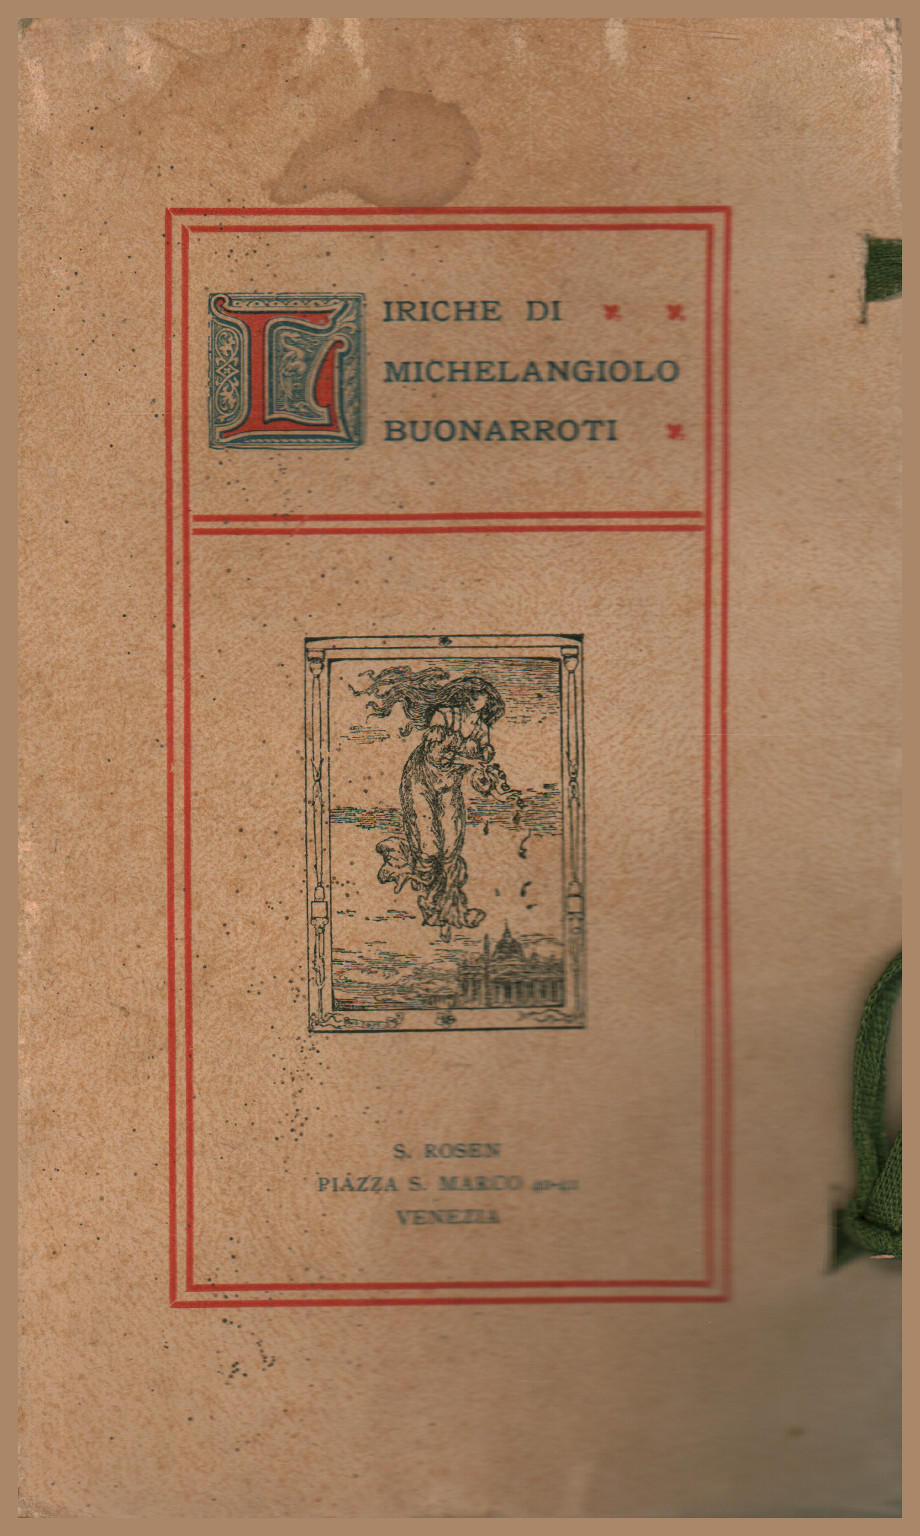 Liriche di Michelangiolo Buonarroti, s.a.